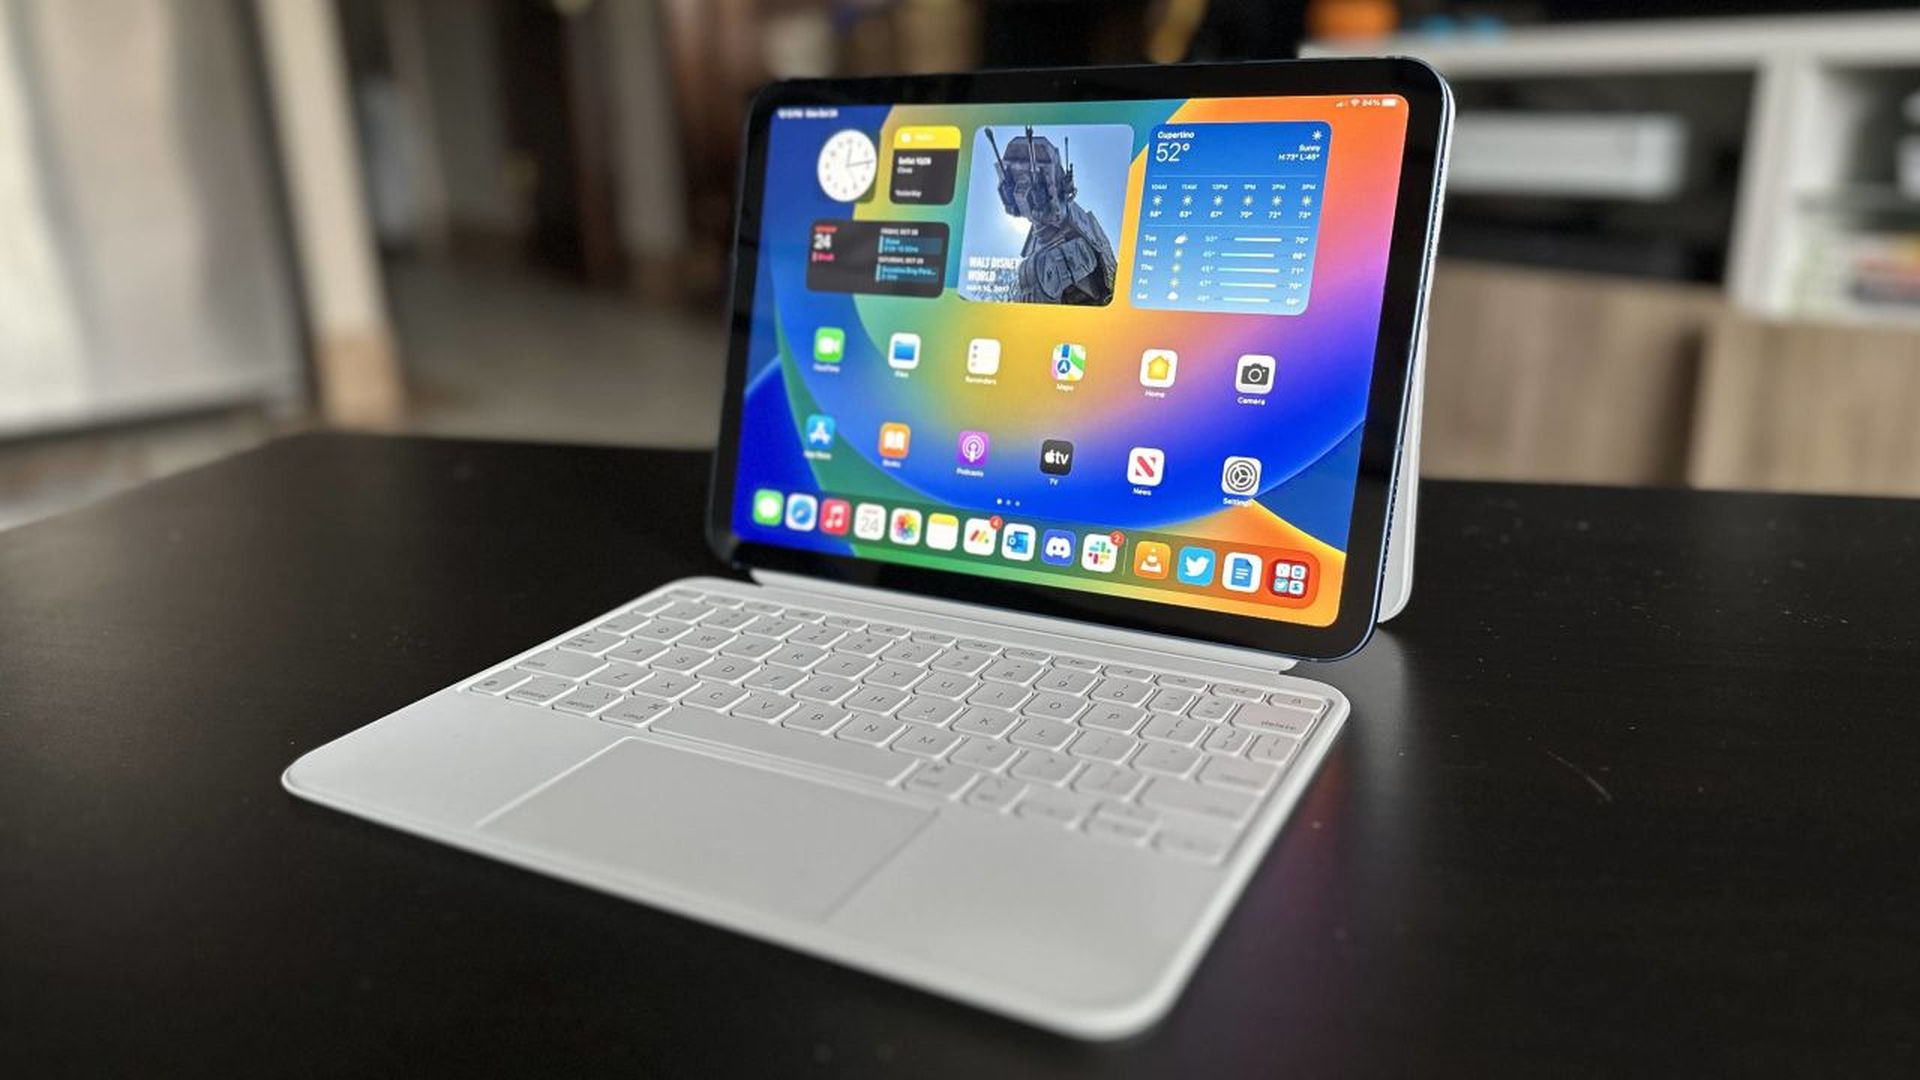 Google Pixel Tablet vs iPad